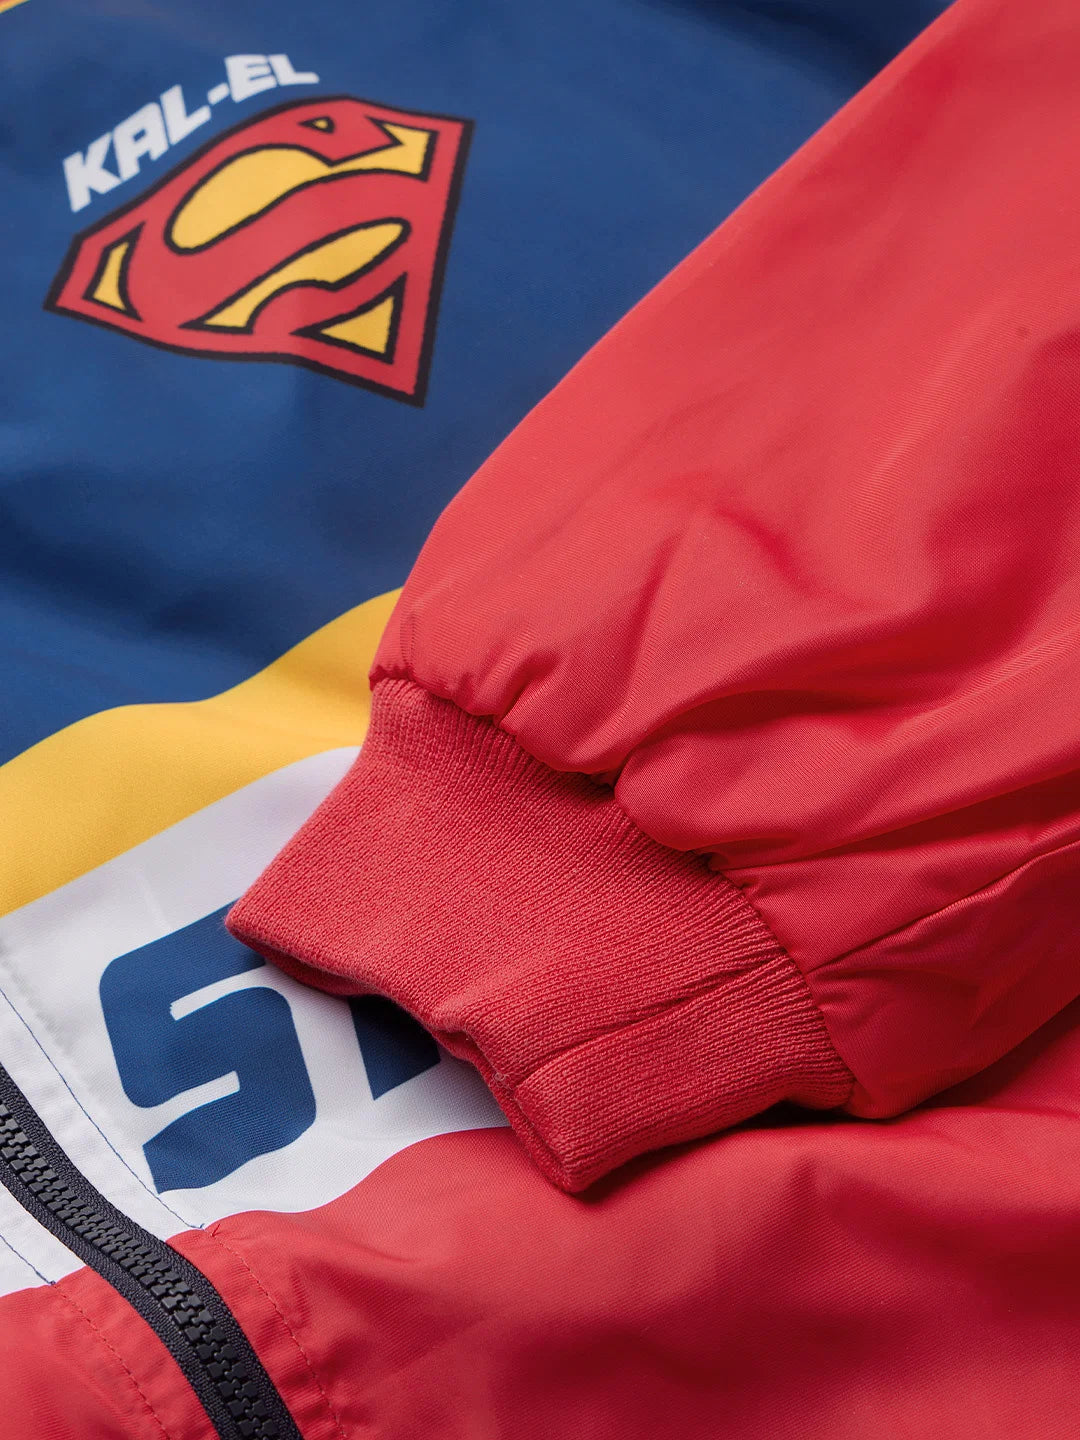 Superman: Kal-El (UK version) Recer Jacket